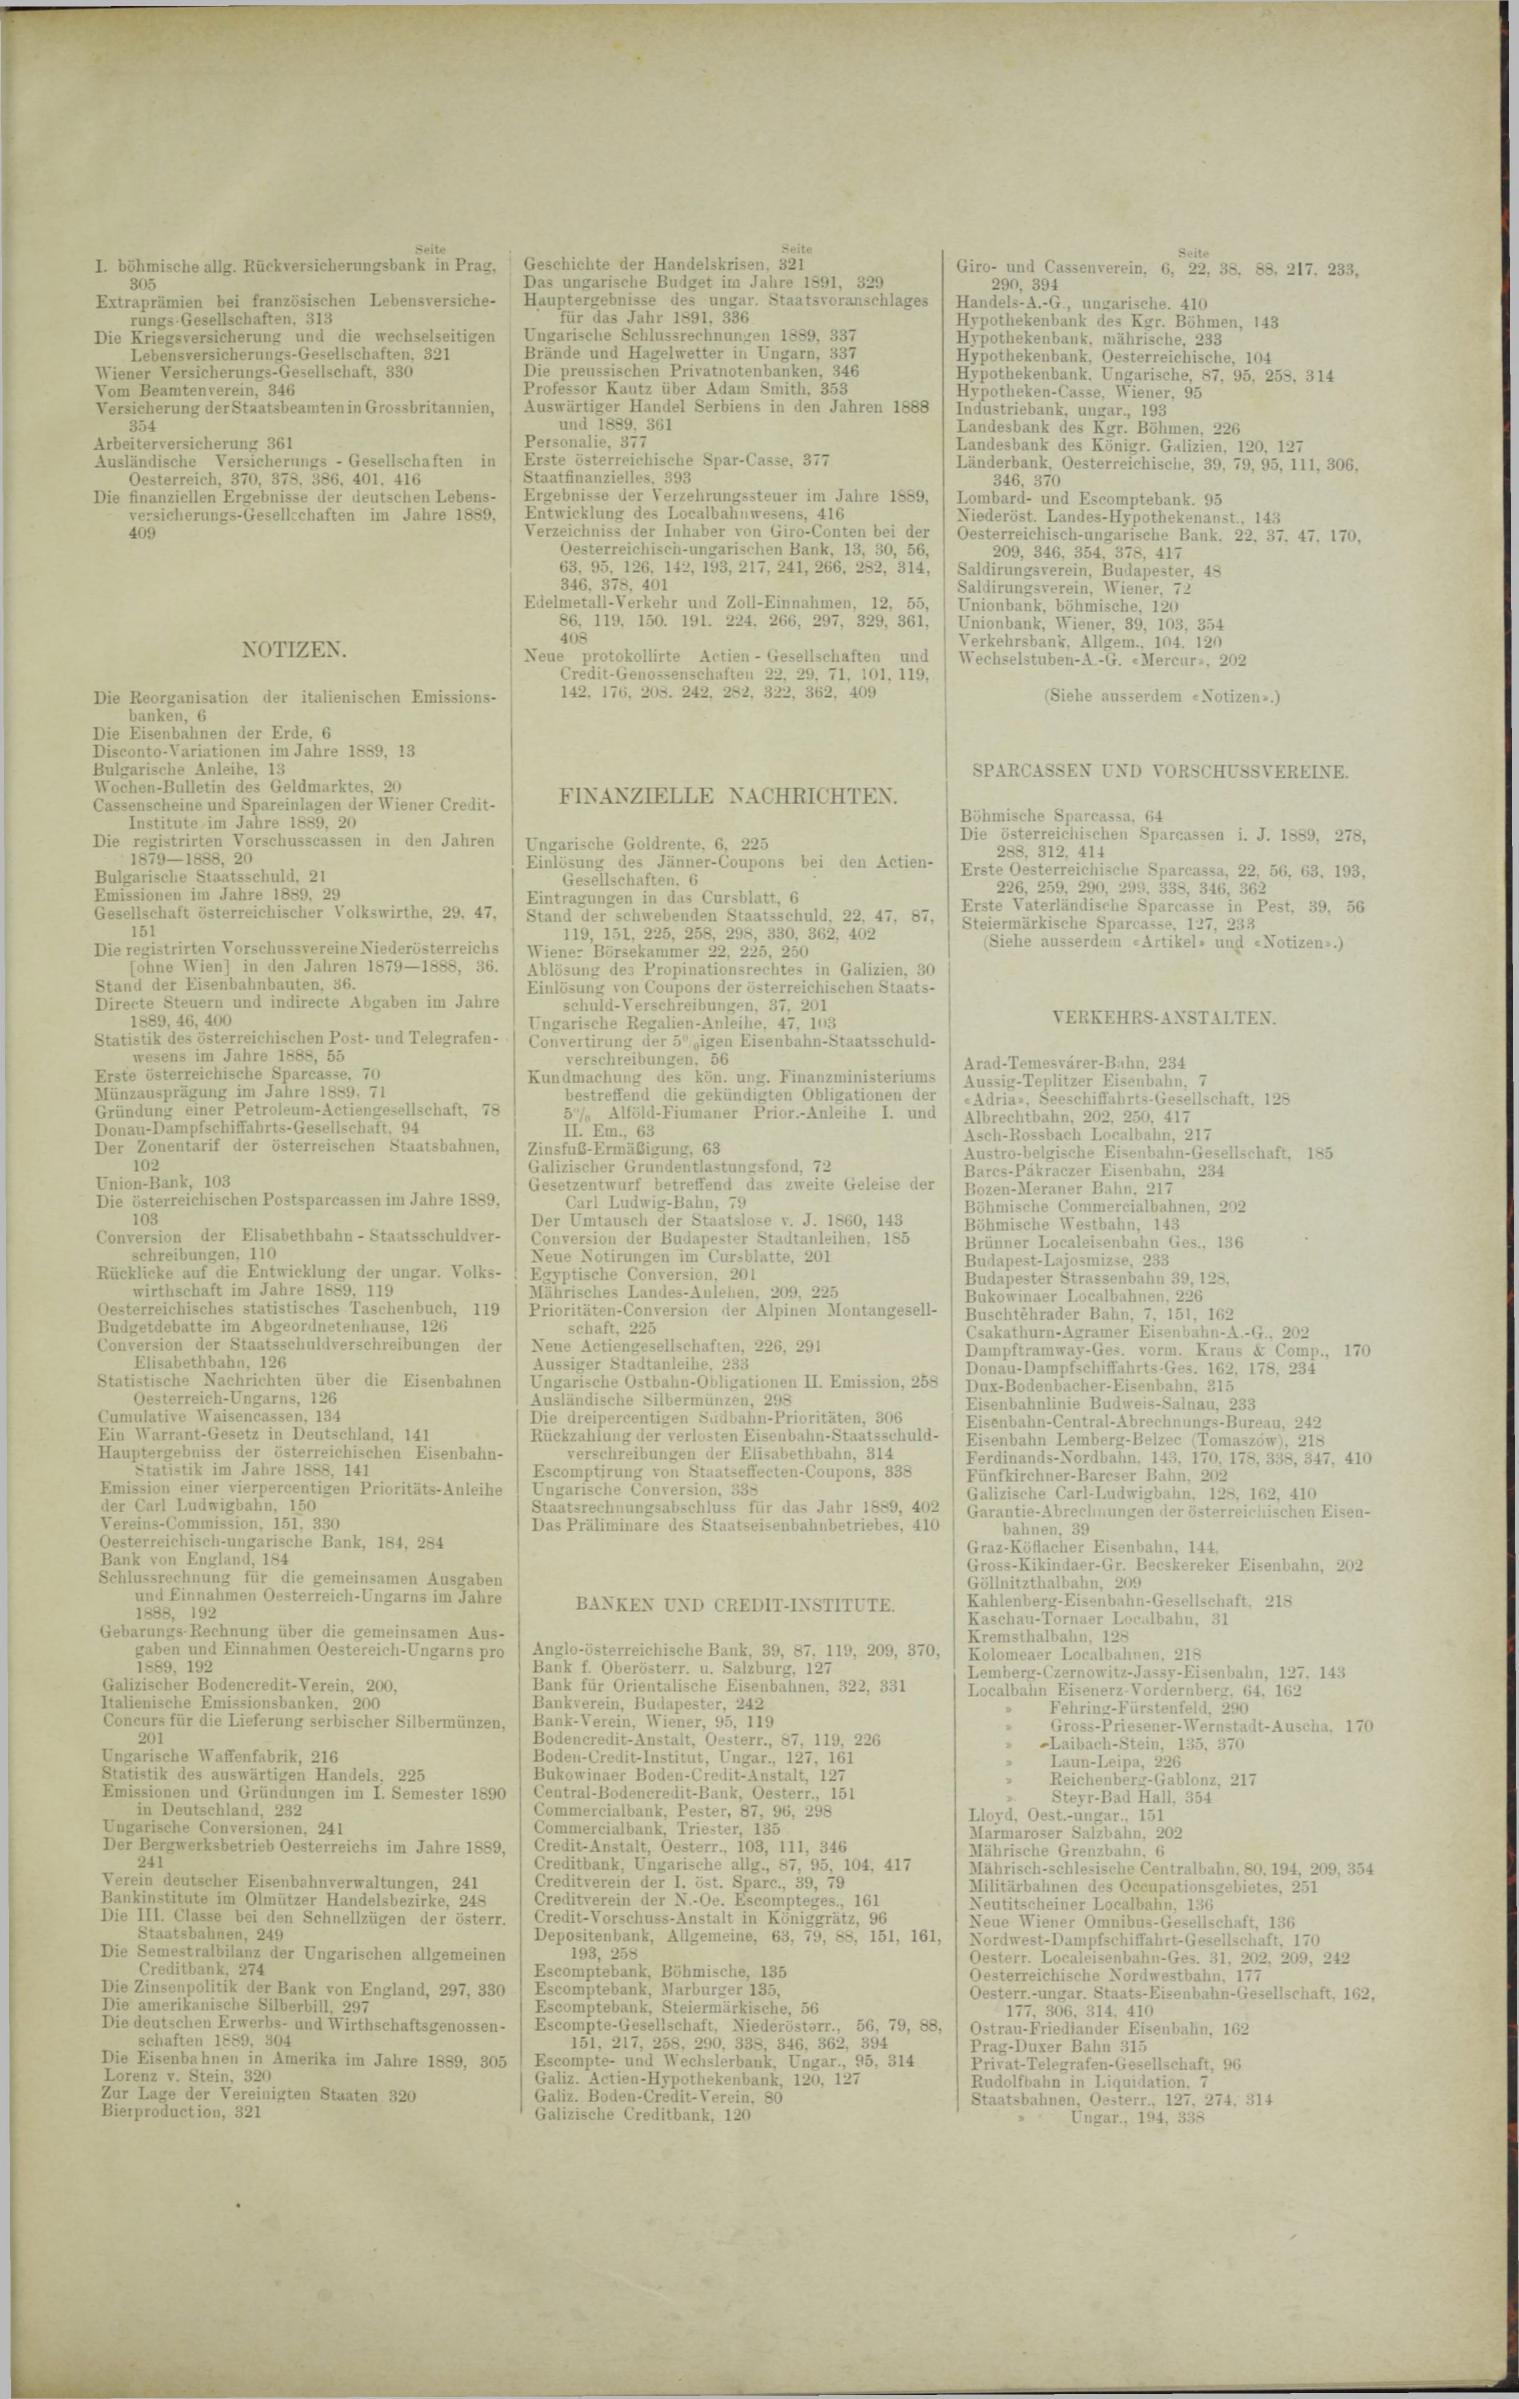 Der Tresor 29.05.1890 - Seite 11